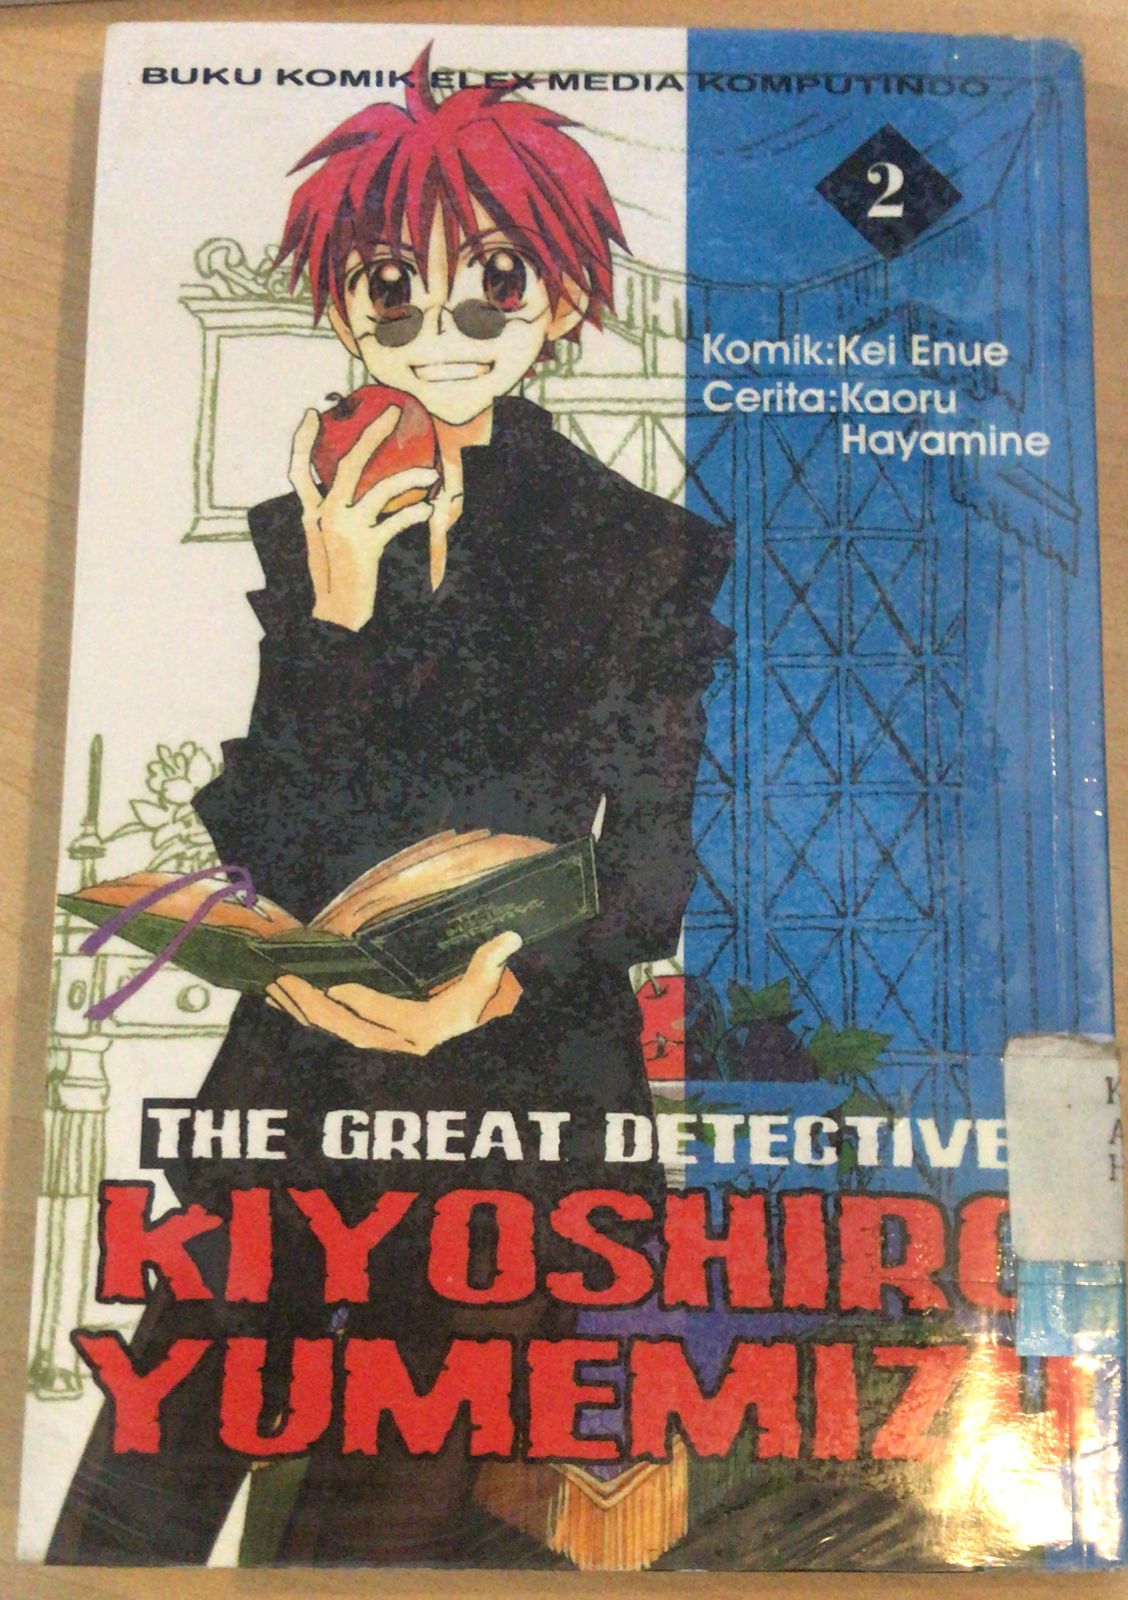 The Great Detective, Kiyoshiro Yumemizu 2